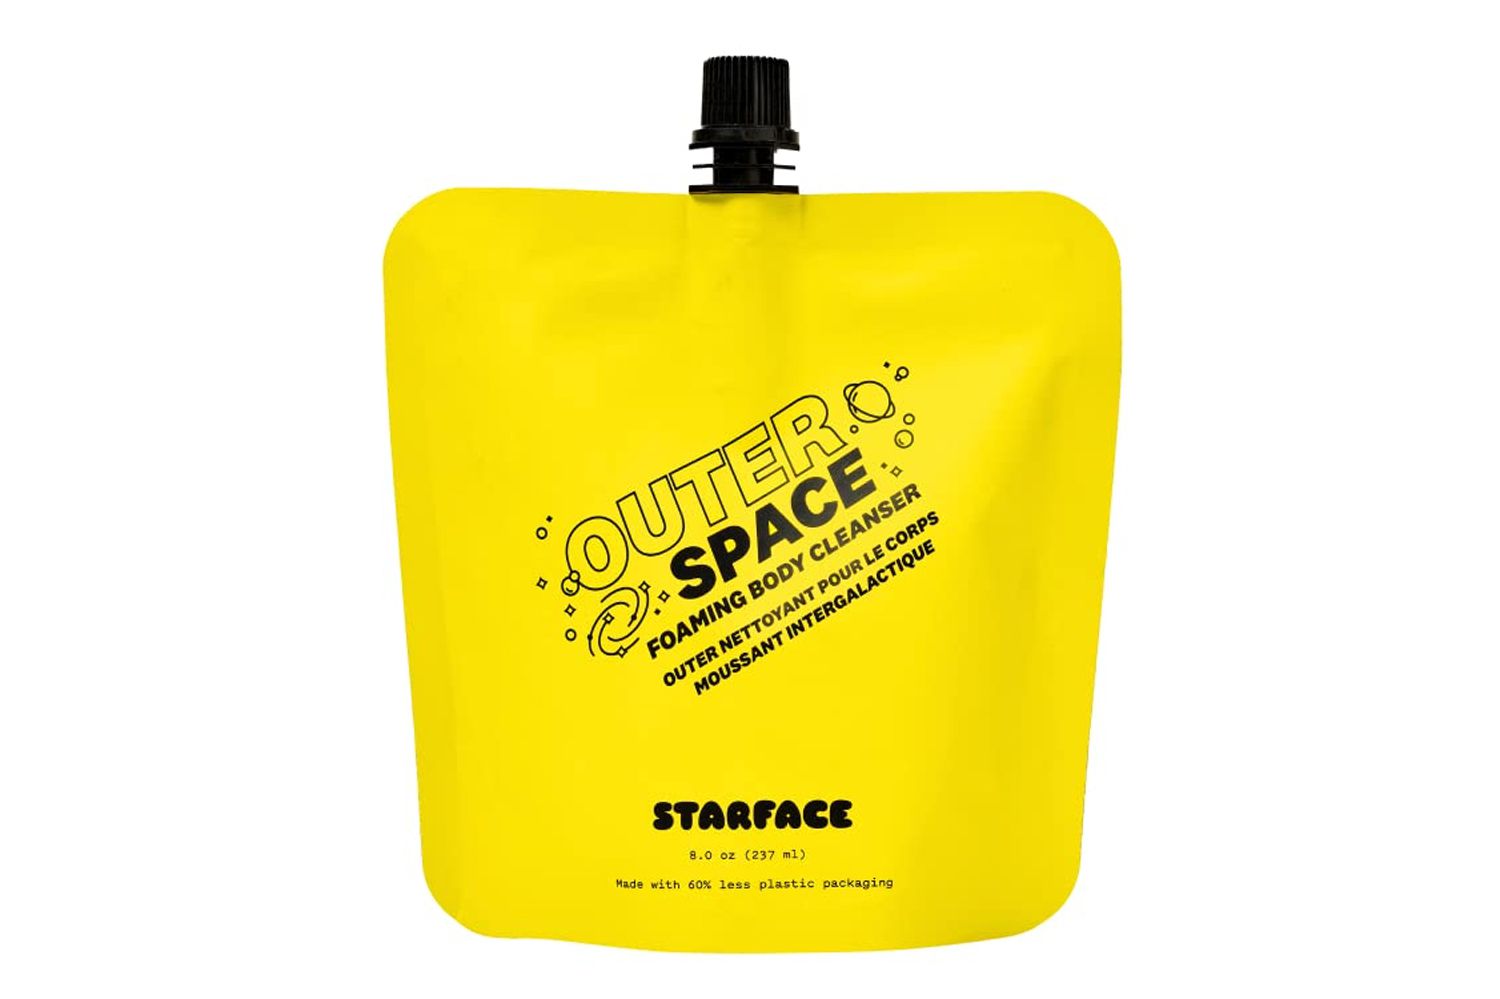 Limpador de corpo de espuma do espaço starface Starface